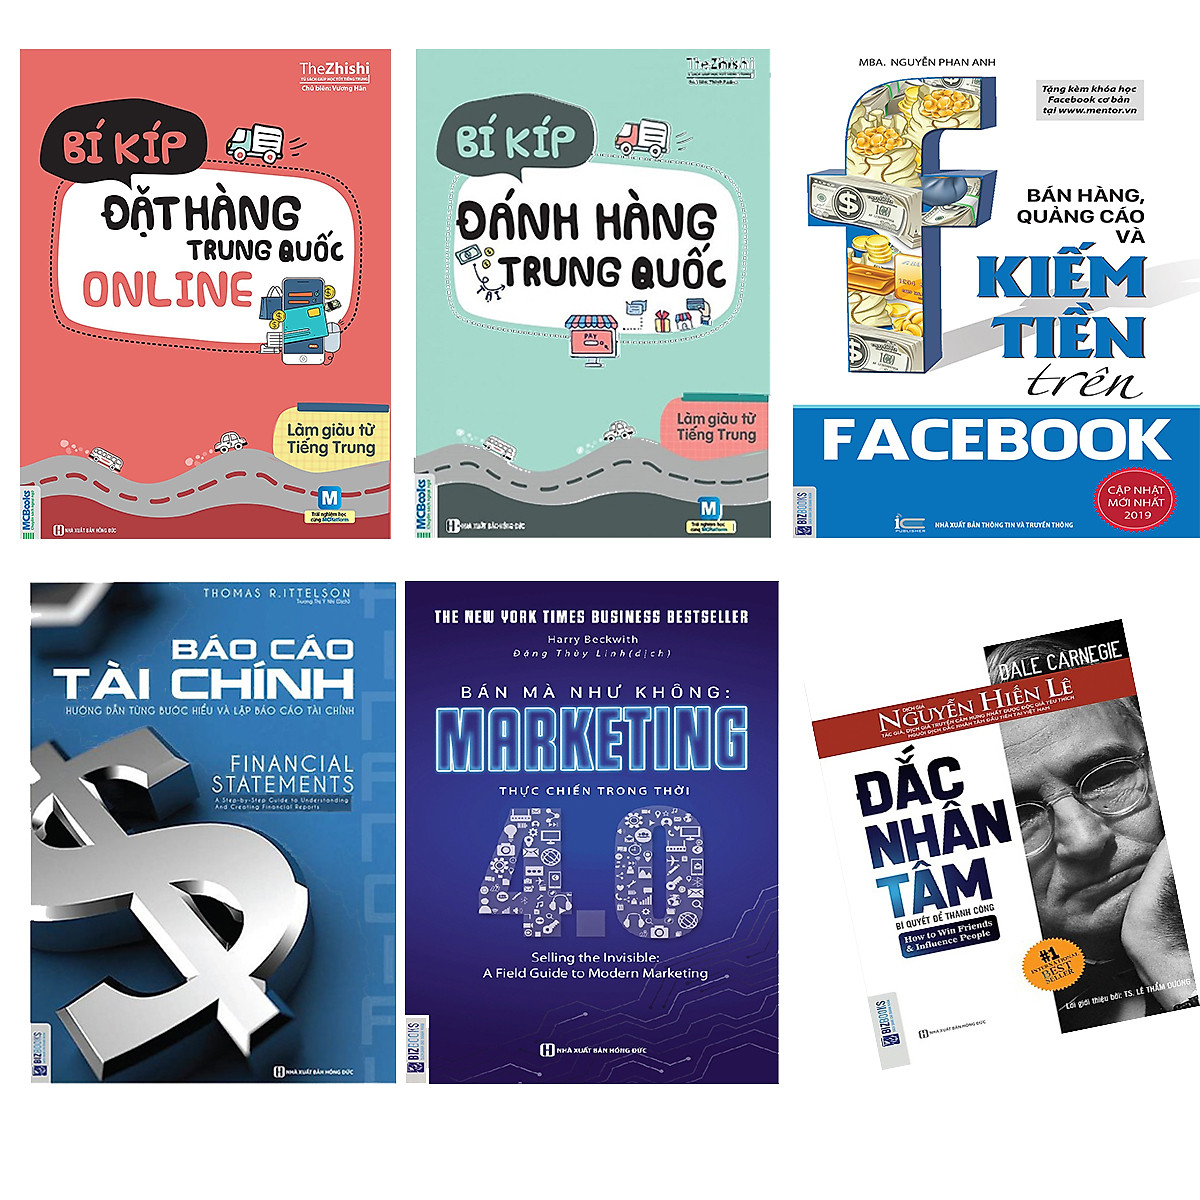 Combo sách kinh doanh online 5 cuốn: Bí kíp đặt hàng Trung Quốc Online + Bí kíp đánh hàng Trung Quốc + Bán hàng, quảng cáo và kiếm tiền facebook + Marketing thực chiến 4.0 + Báo cáo Tài Chính (tặng sách Đắc nhân tâm)